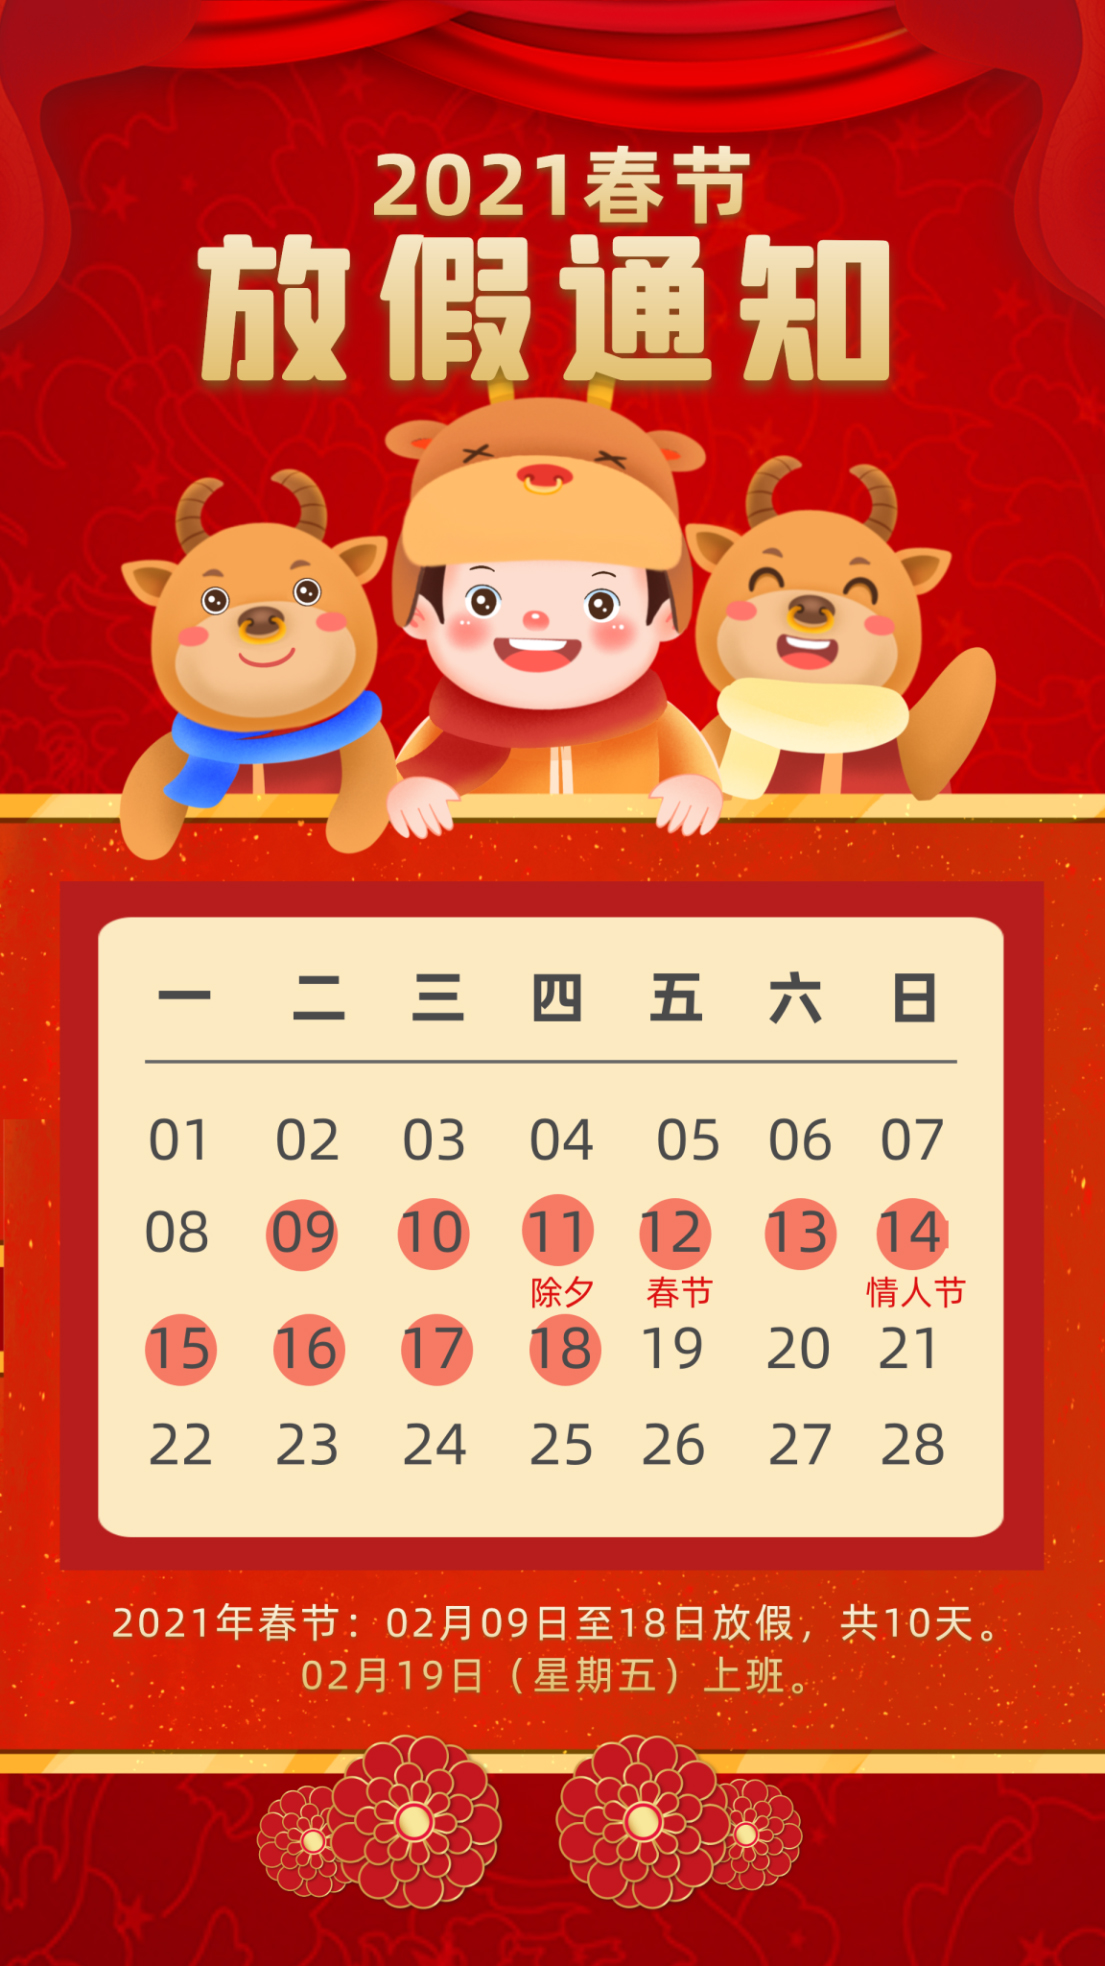 明博电竞·(中国)关于2021年春节放假安排的通知